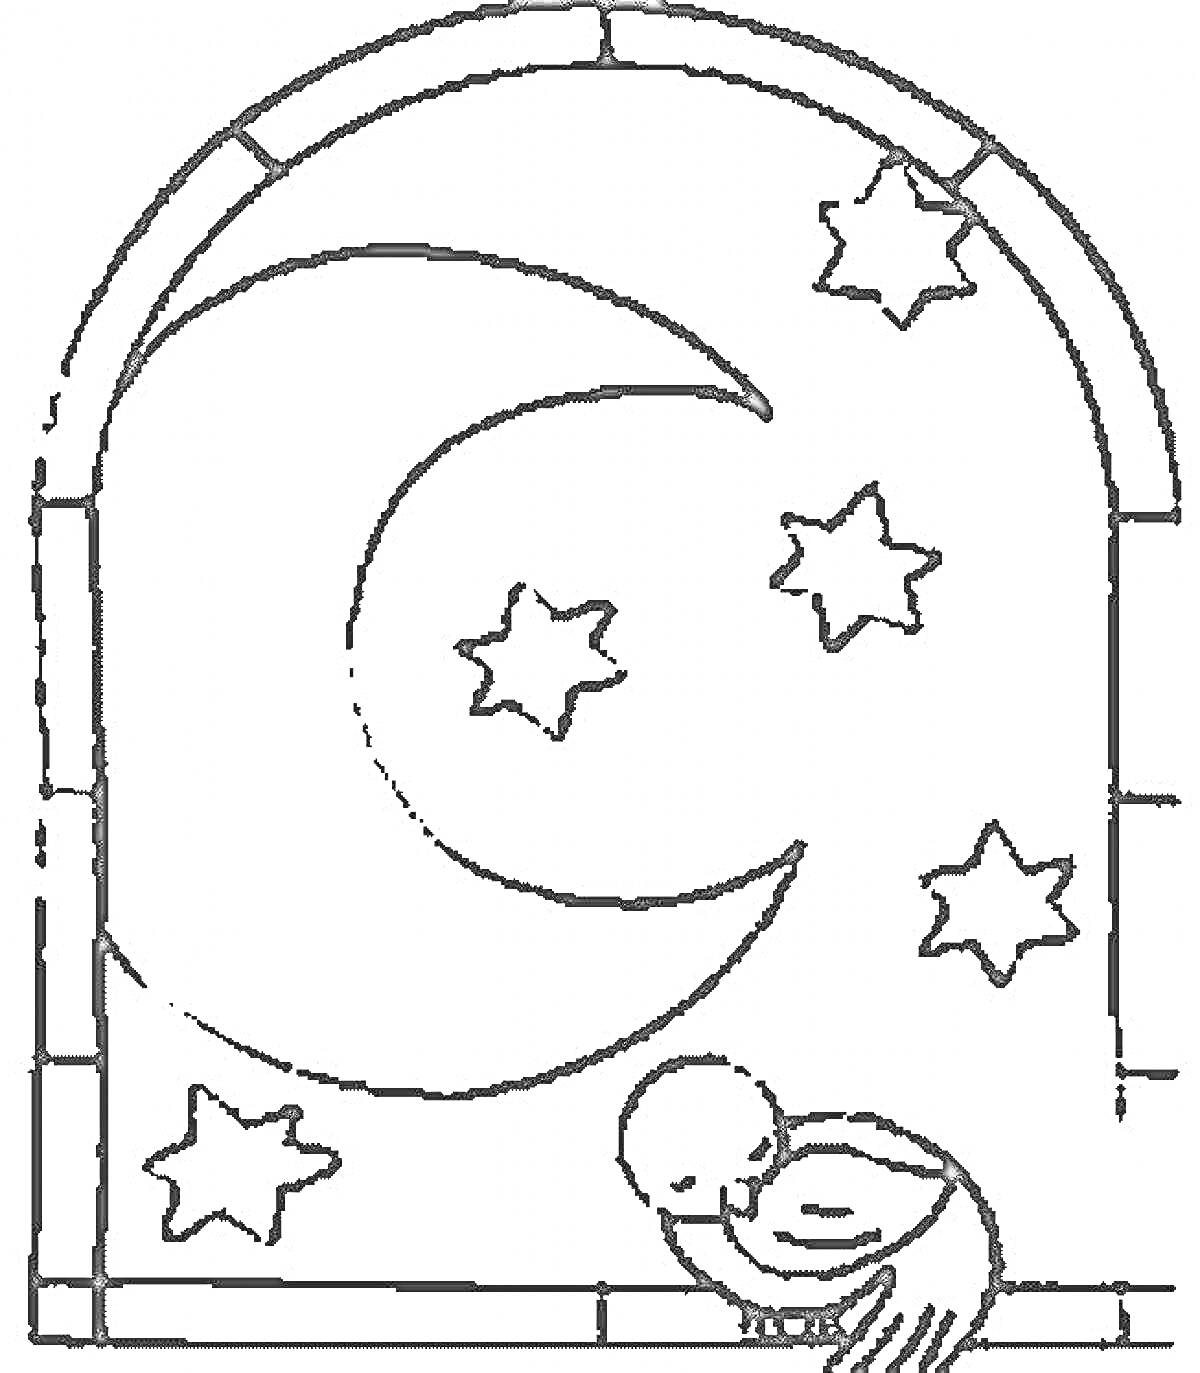 Луна и звезды в арке с молящимся человеком